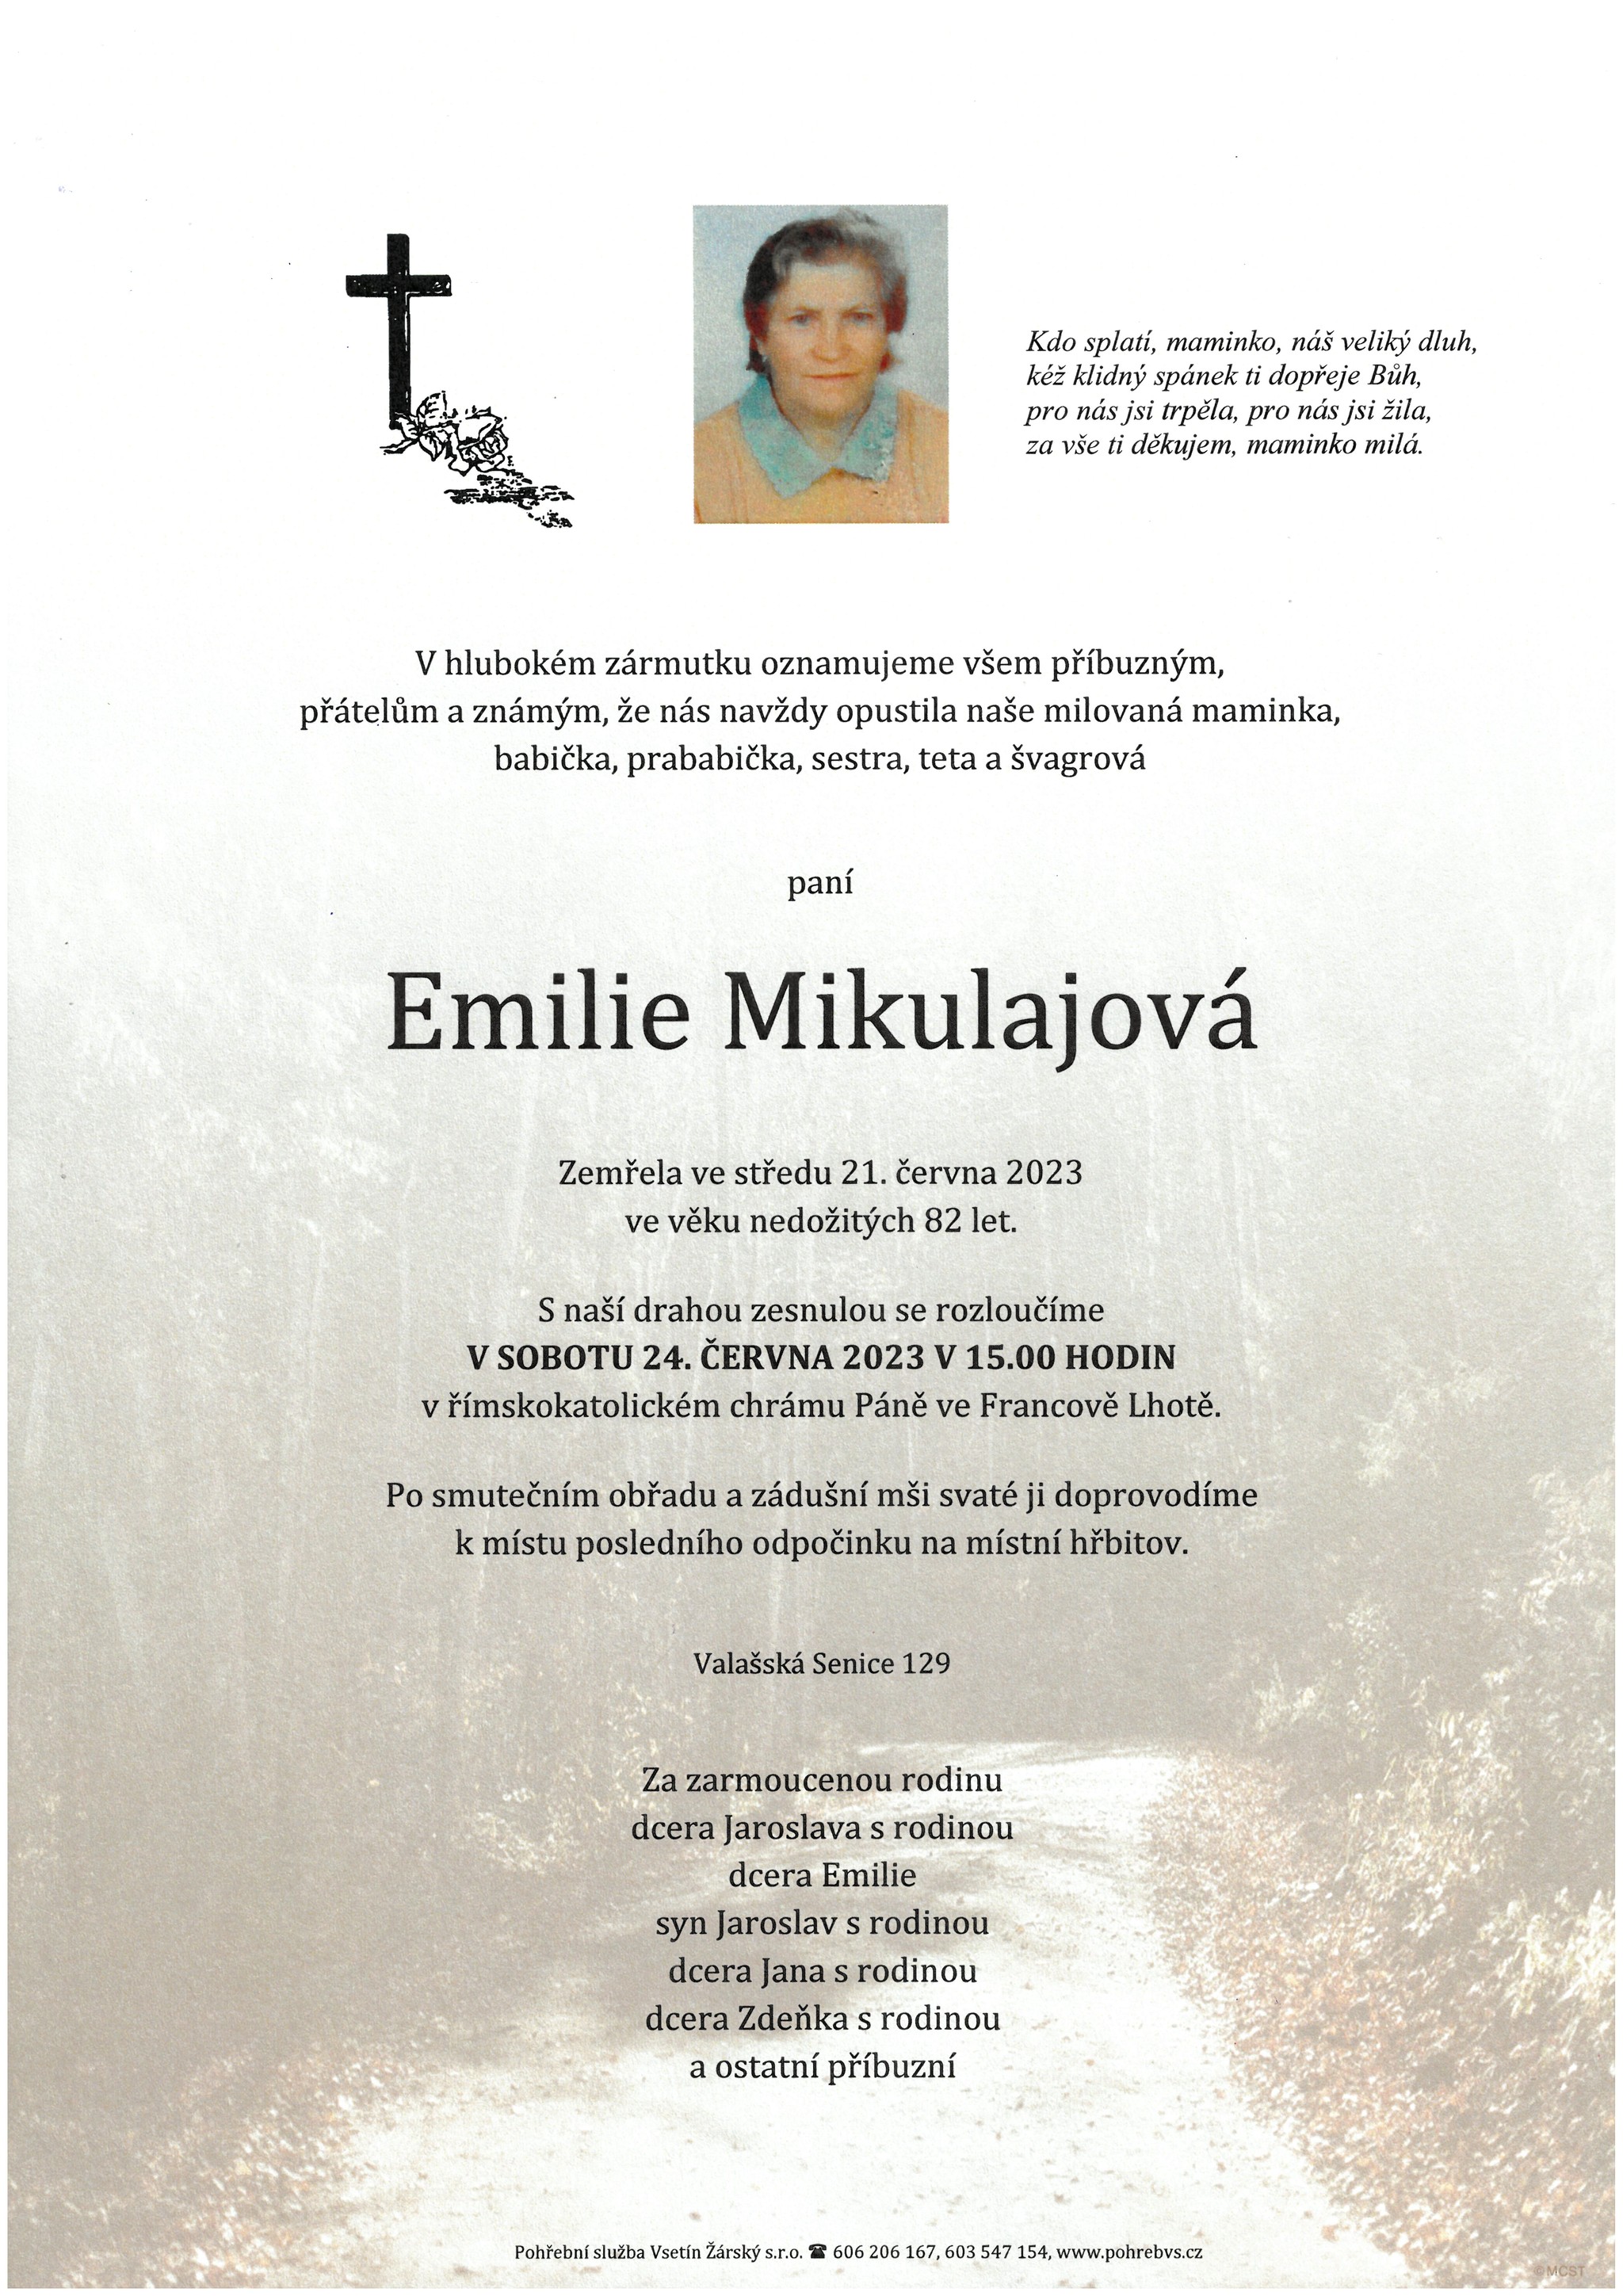 Emilie Mikulajová